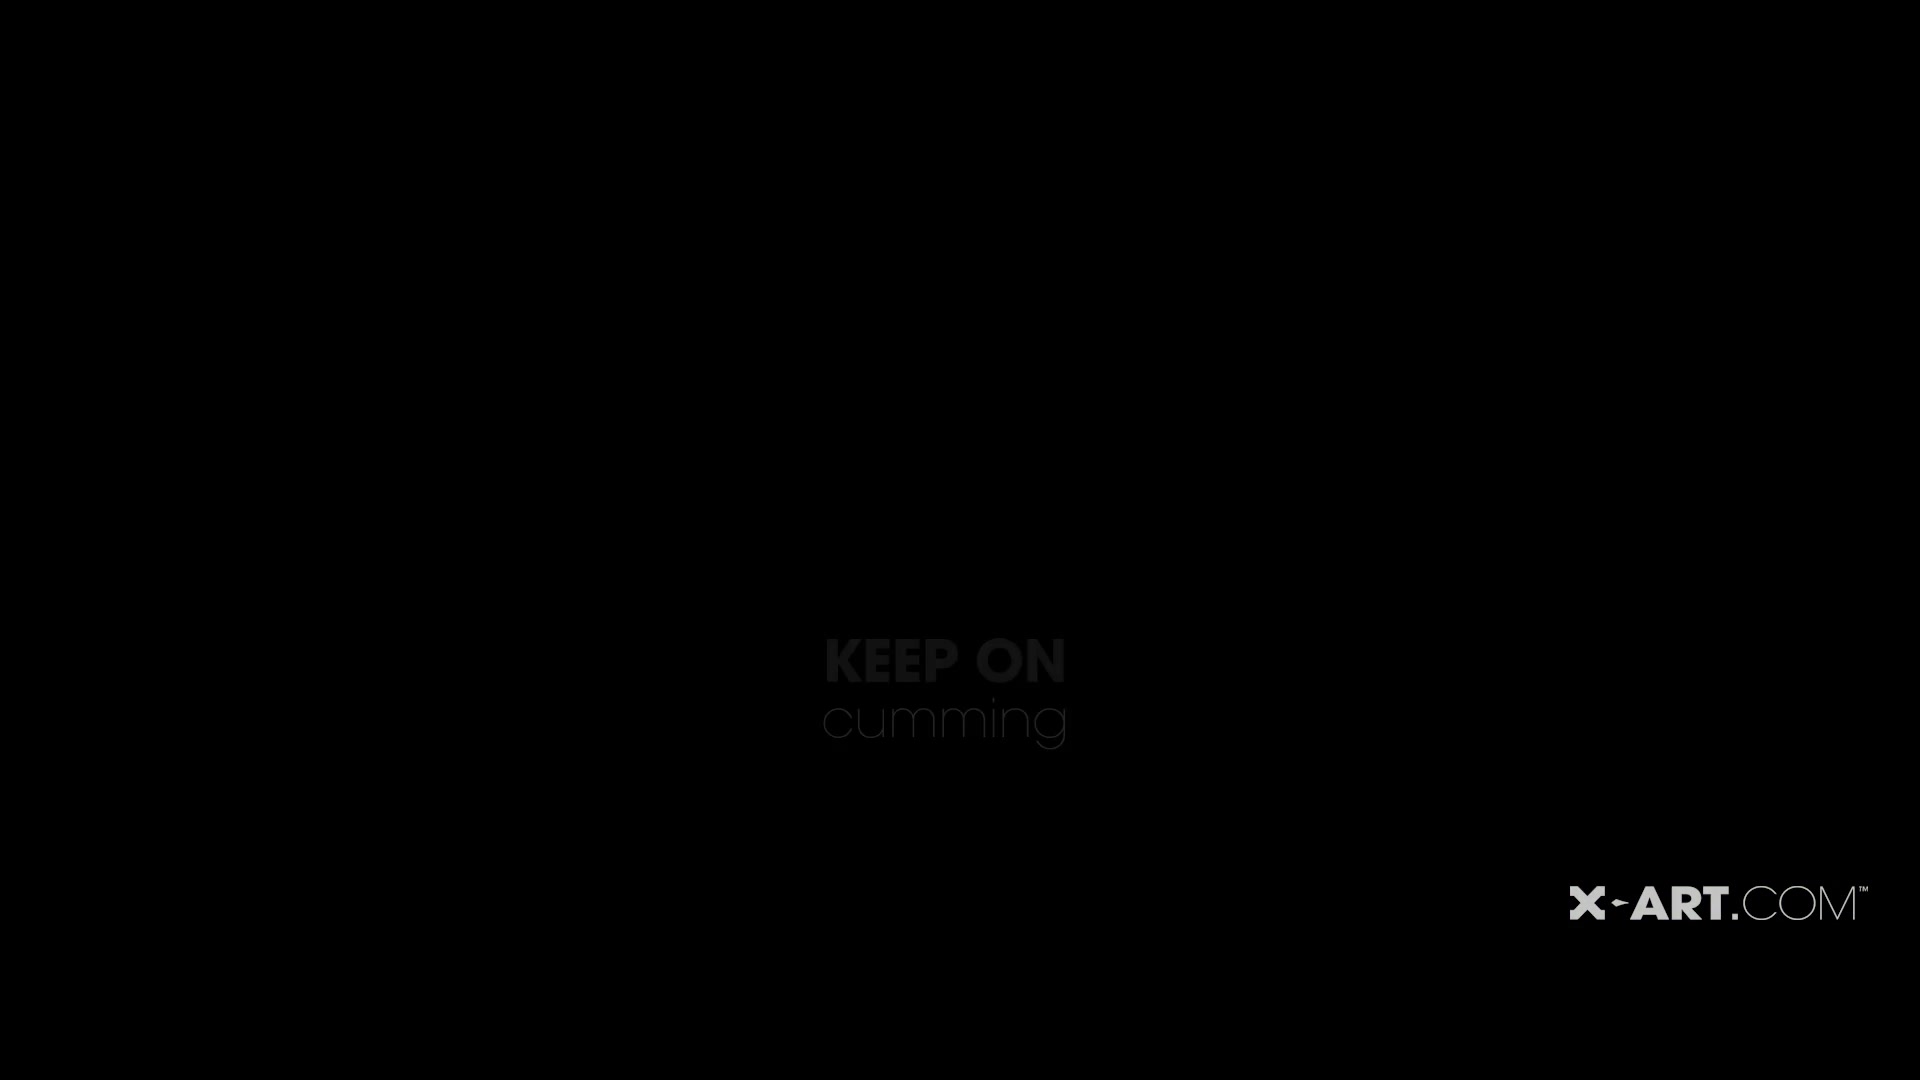 XPORN - Keep on Cumming (Kaylee)